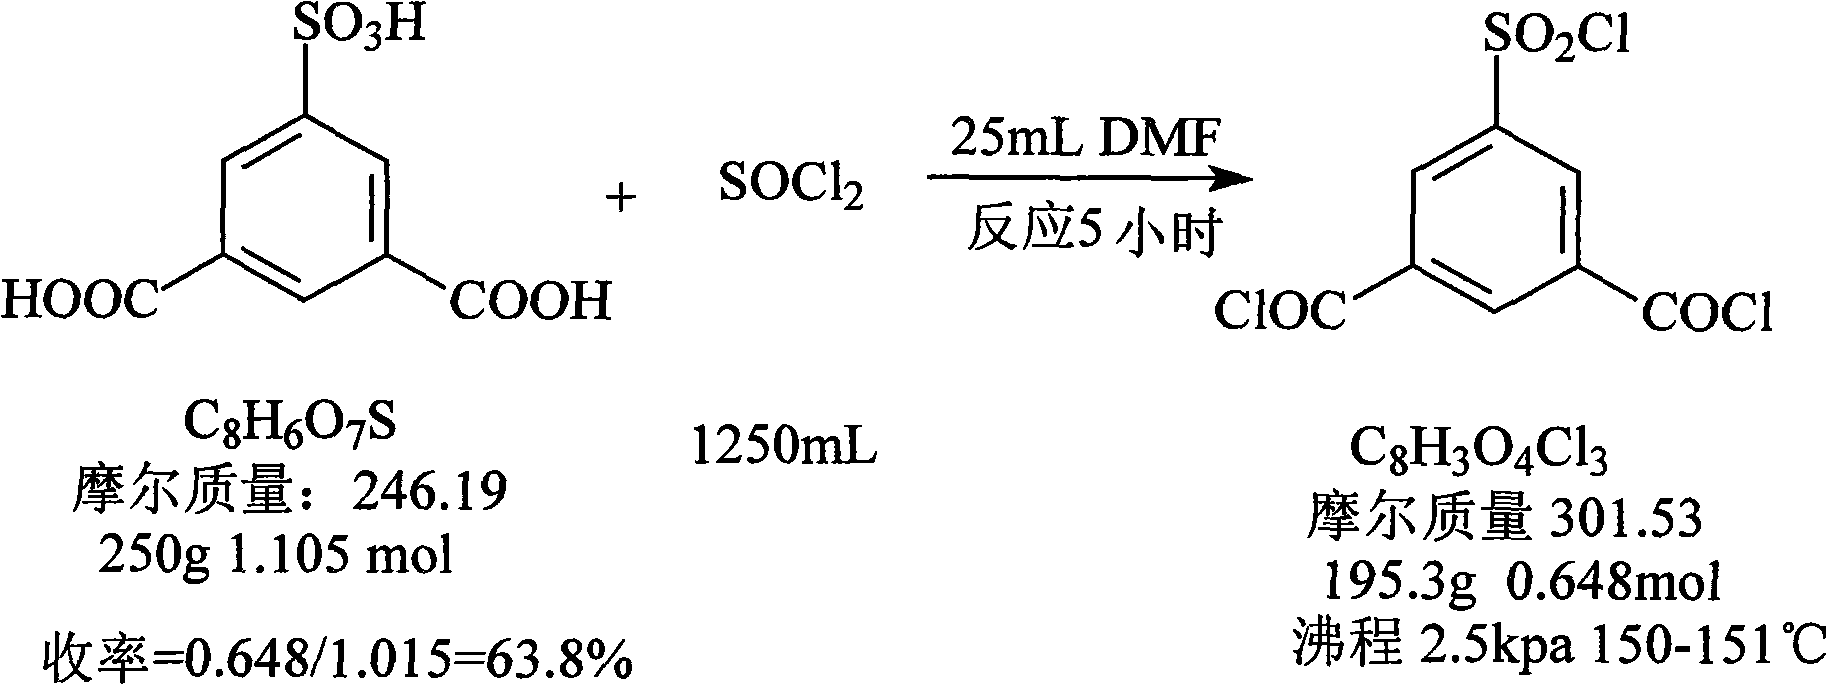 Preparation method of 5-chlorosulfonyl isophthaloyl acid chloride